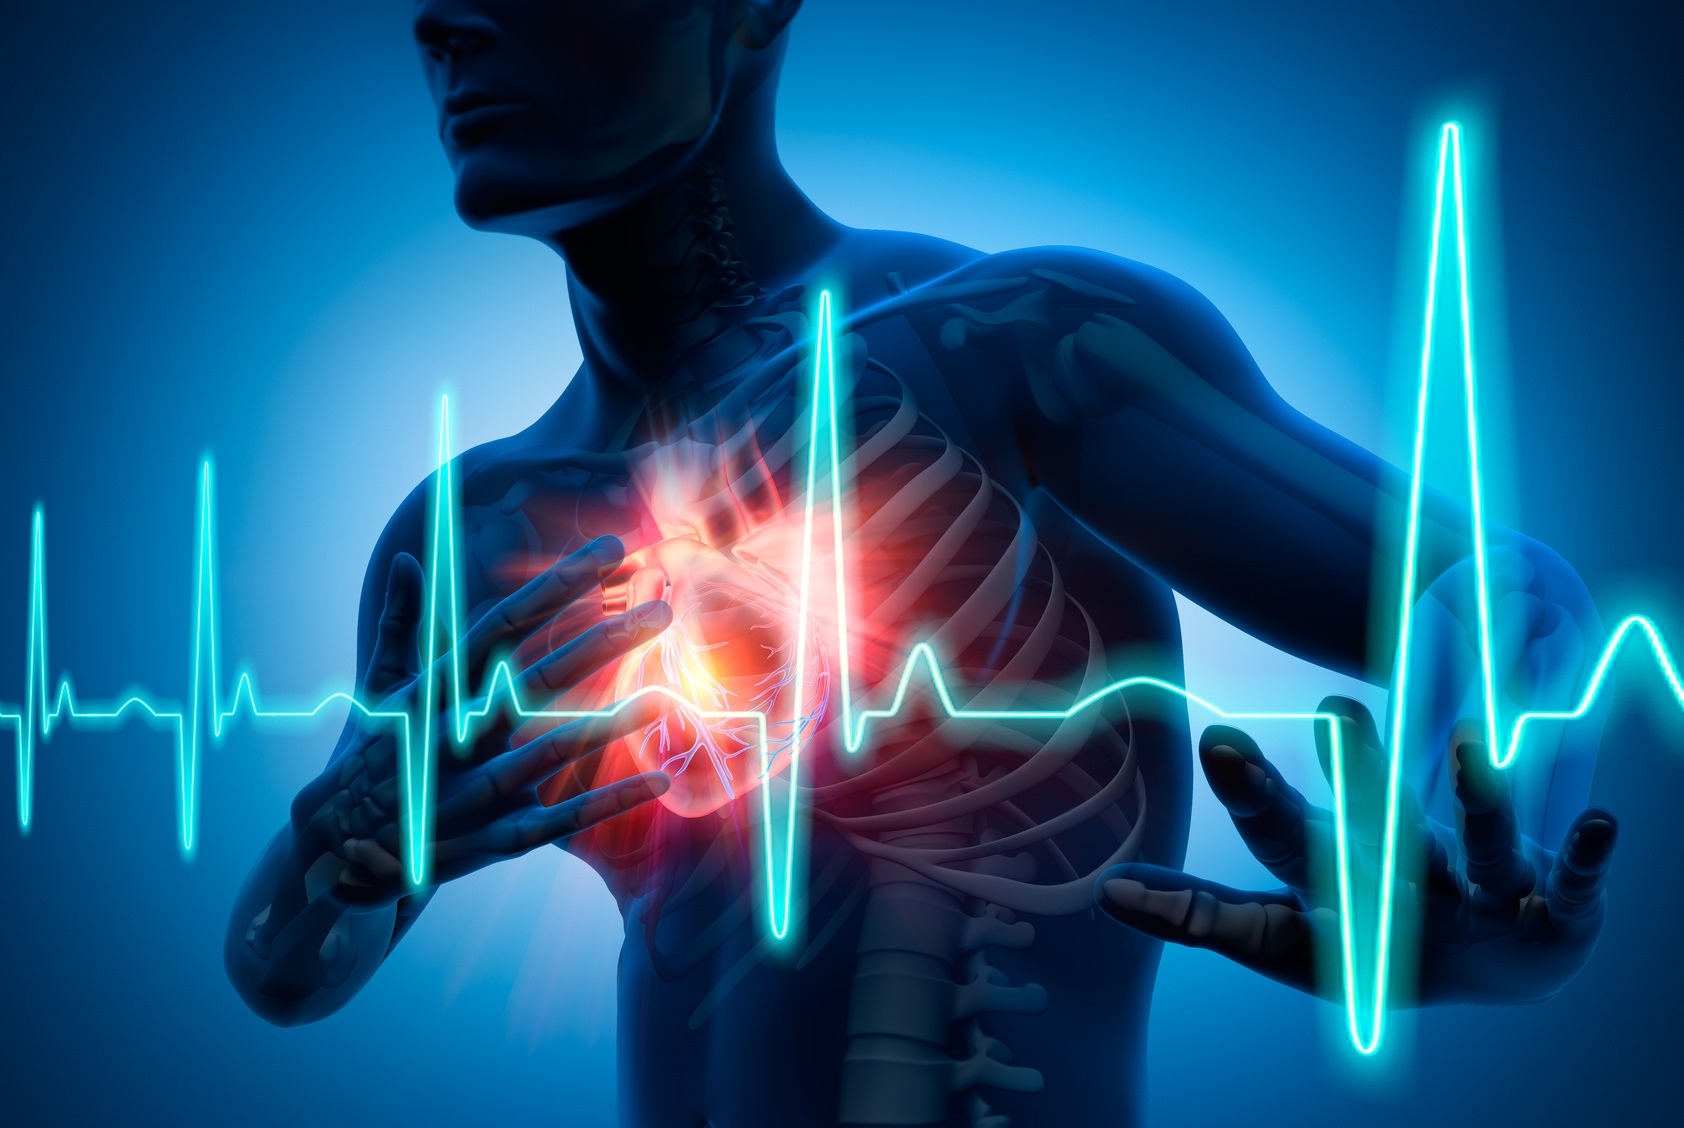 Un patch pourrait réduire les dommages cardiaques après un infarctus du myocarde. © peterschreiber.media, Fotolia